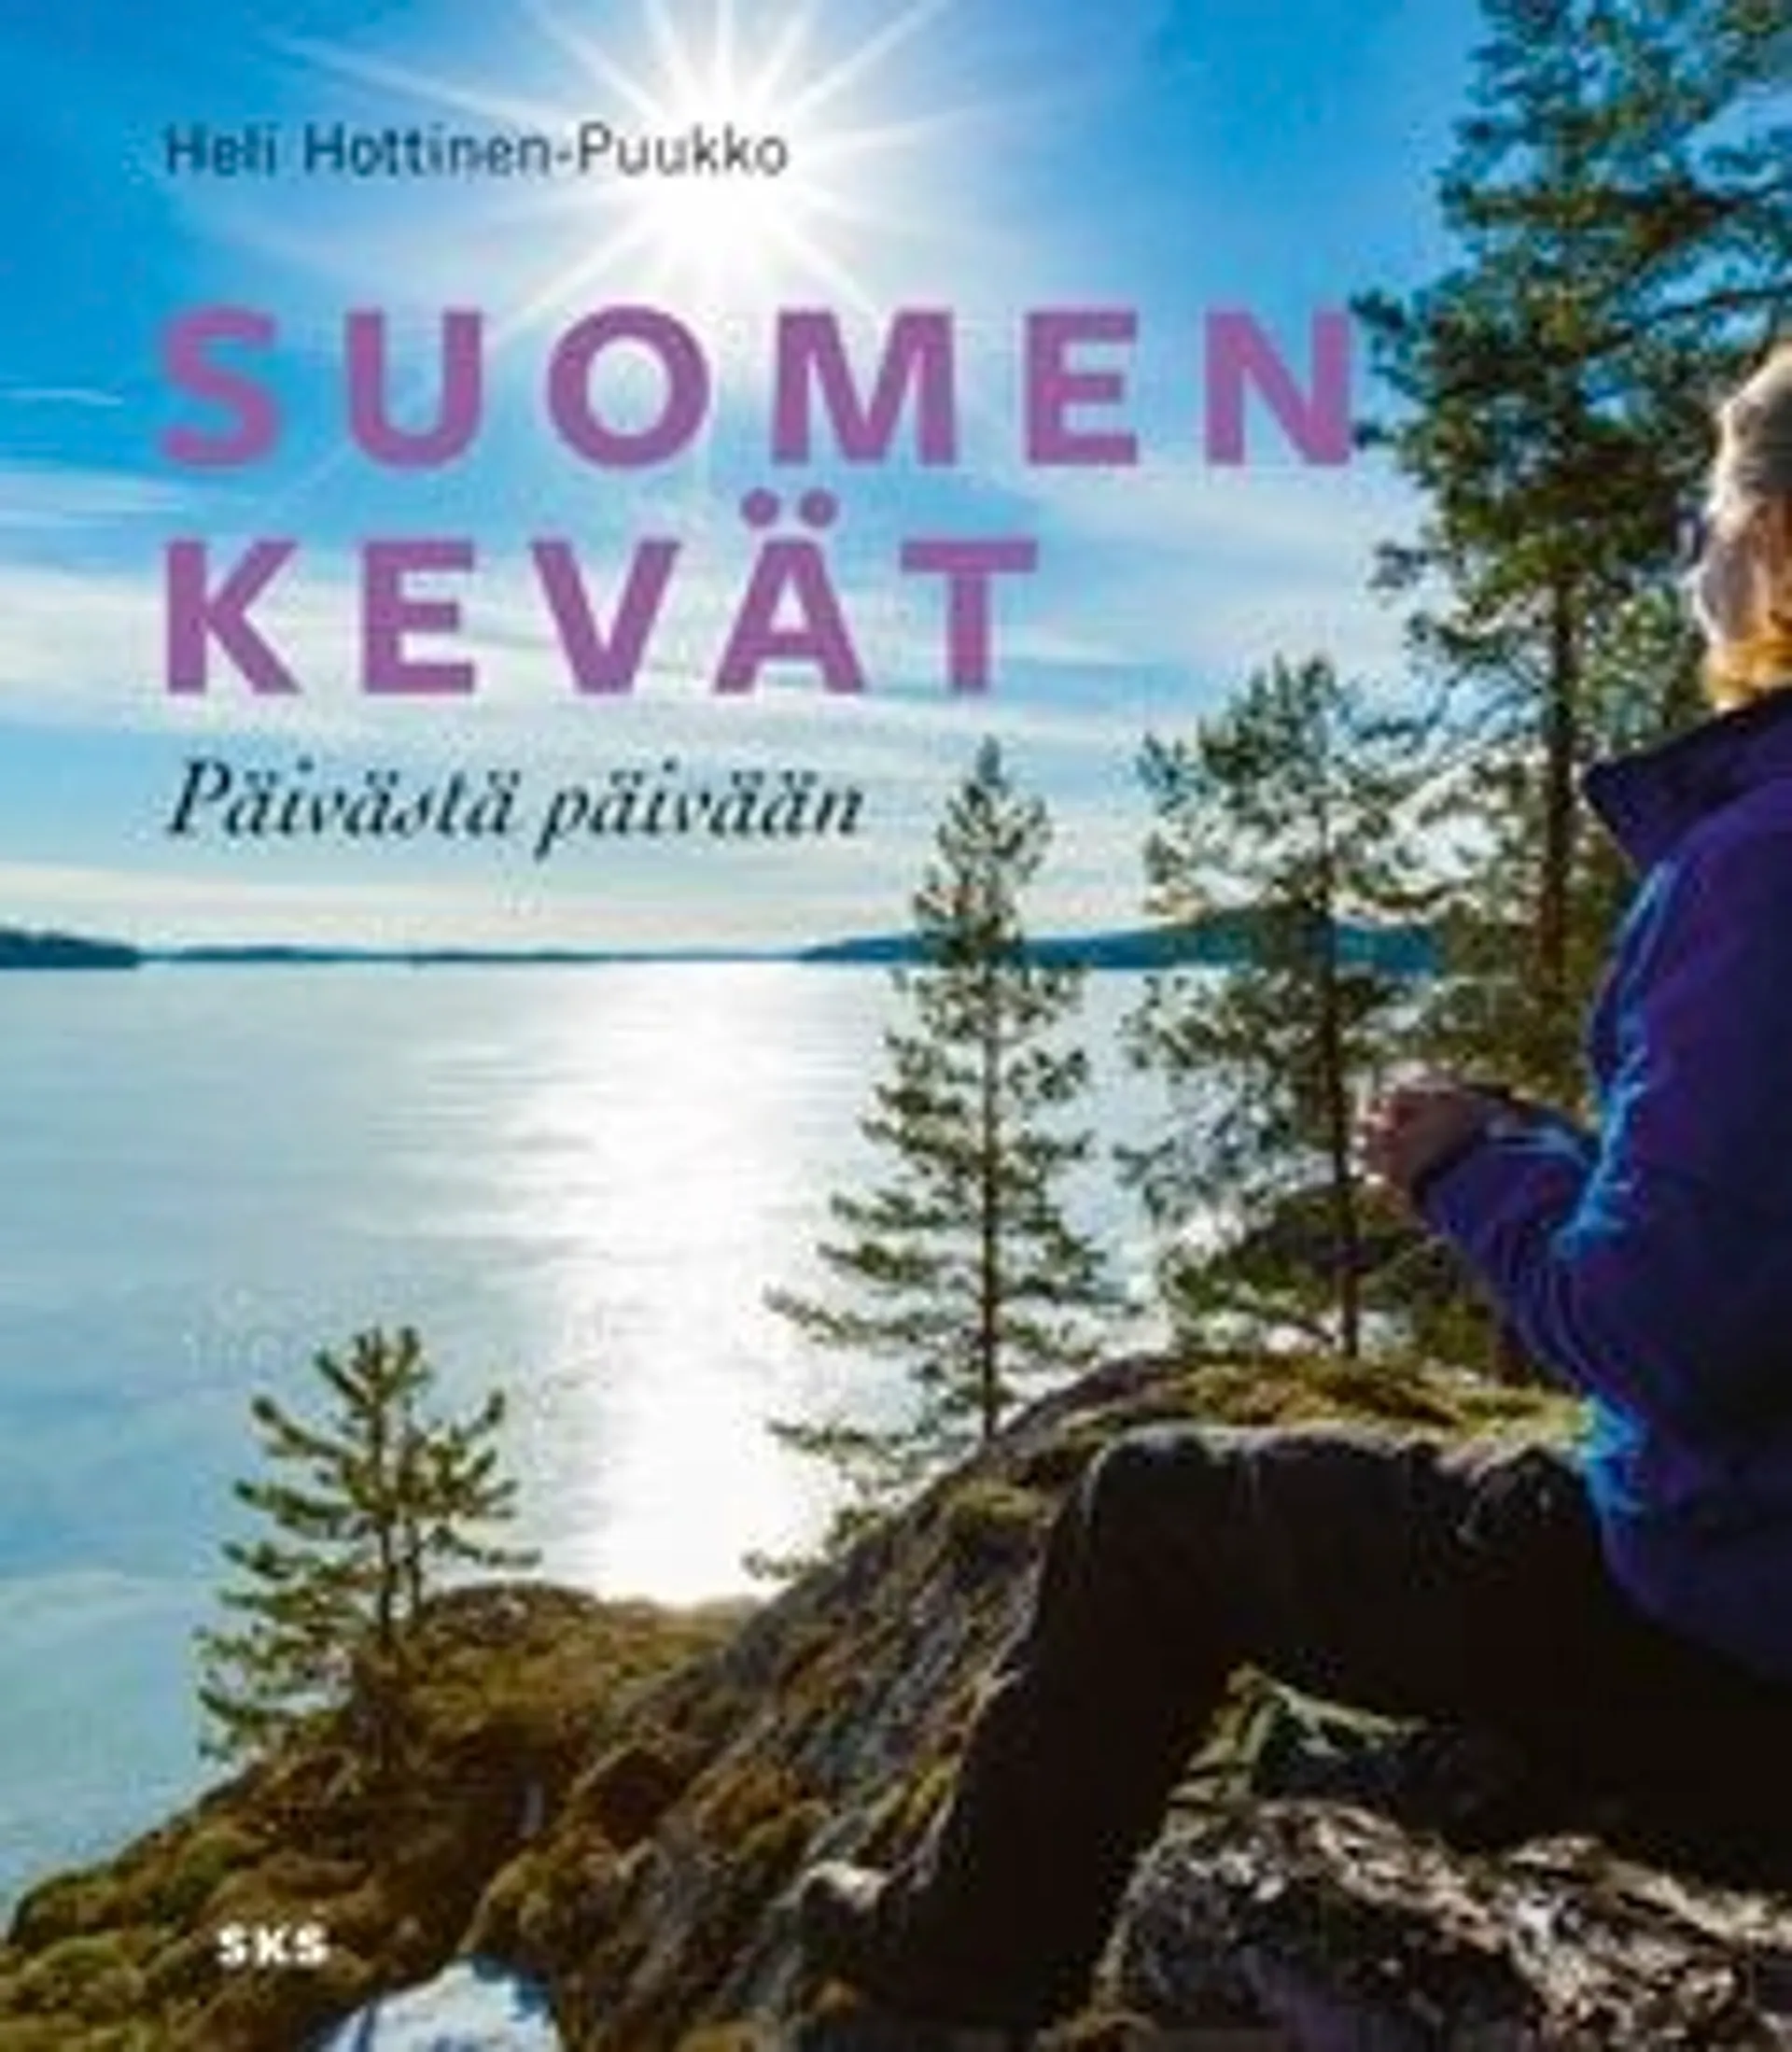 Hottinen-Puukko, Suomen kevät